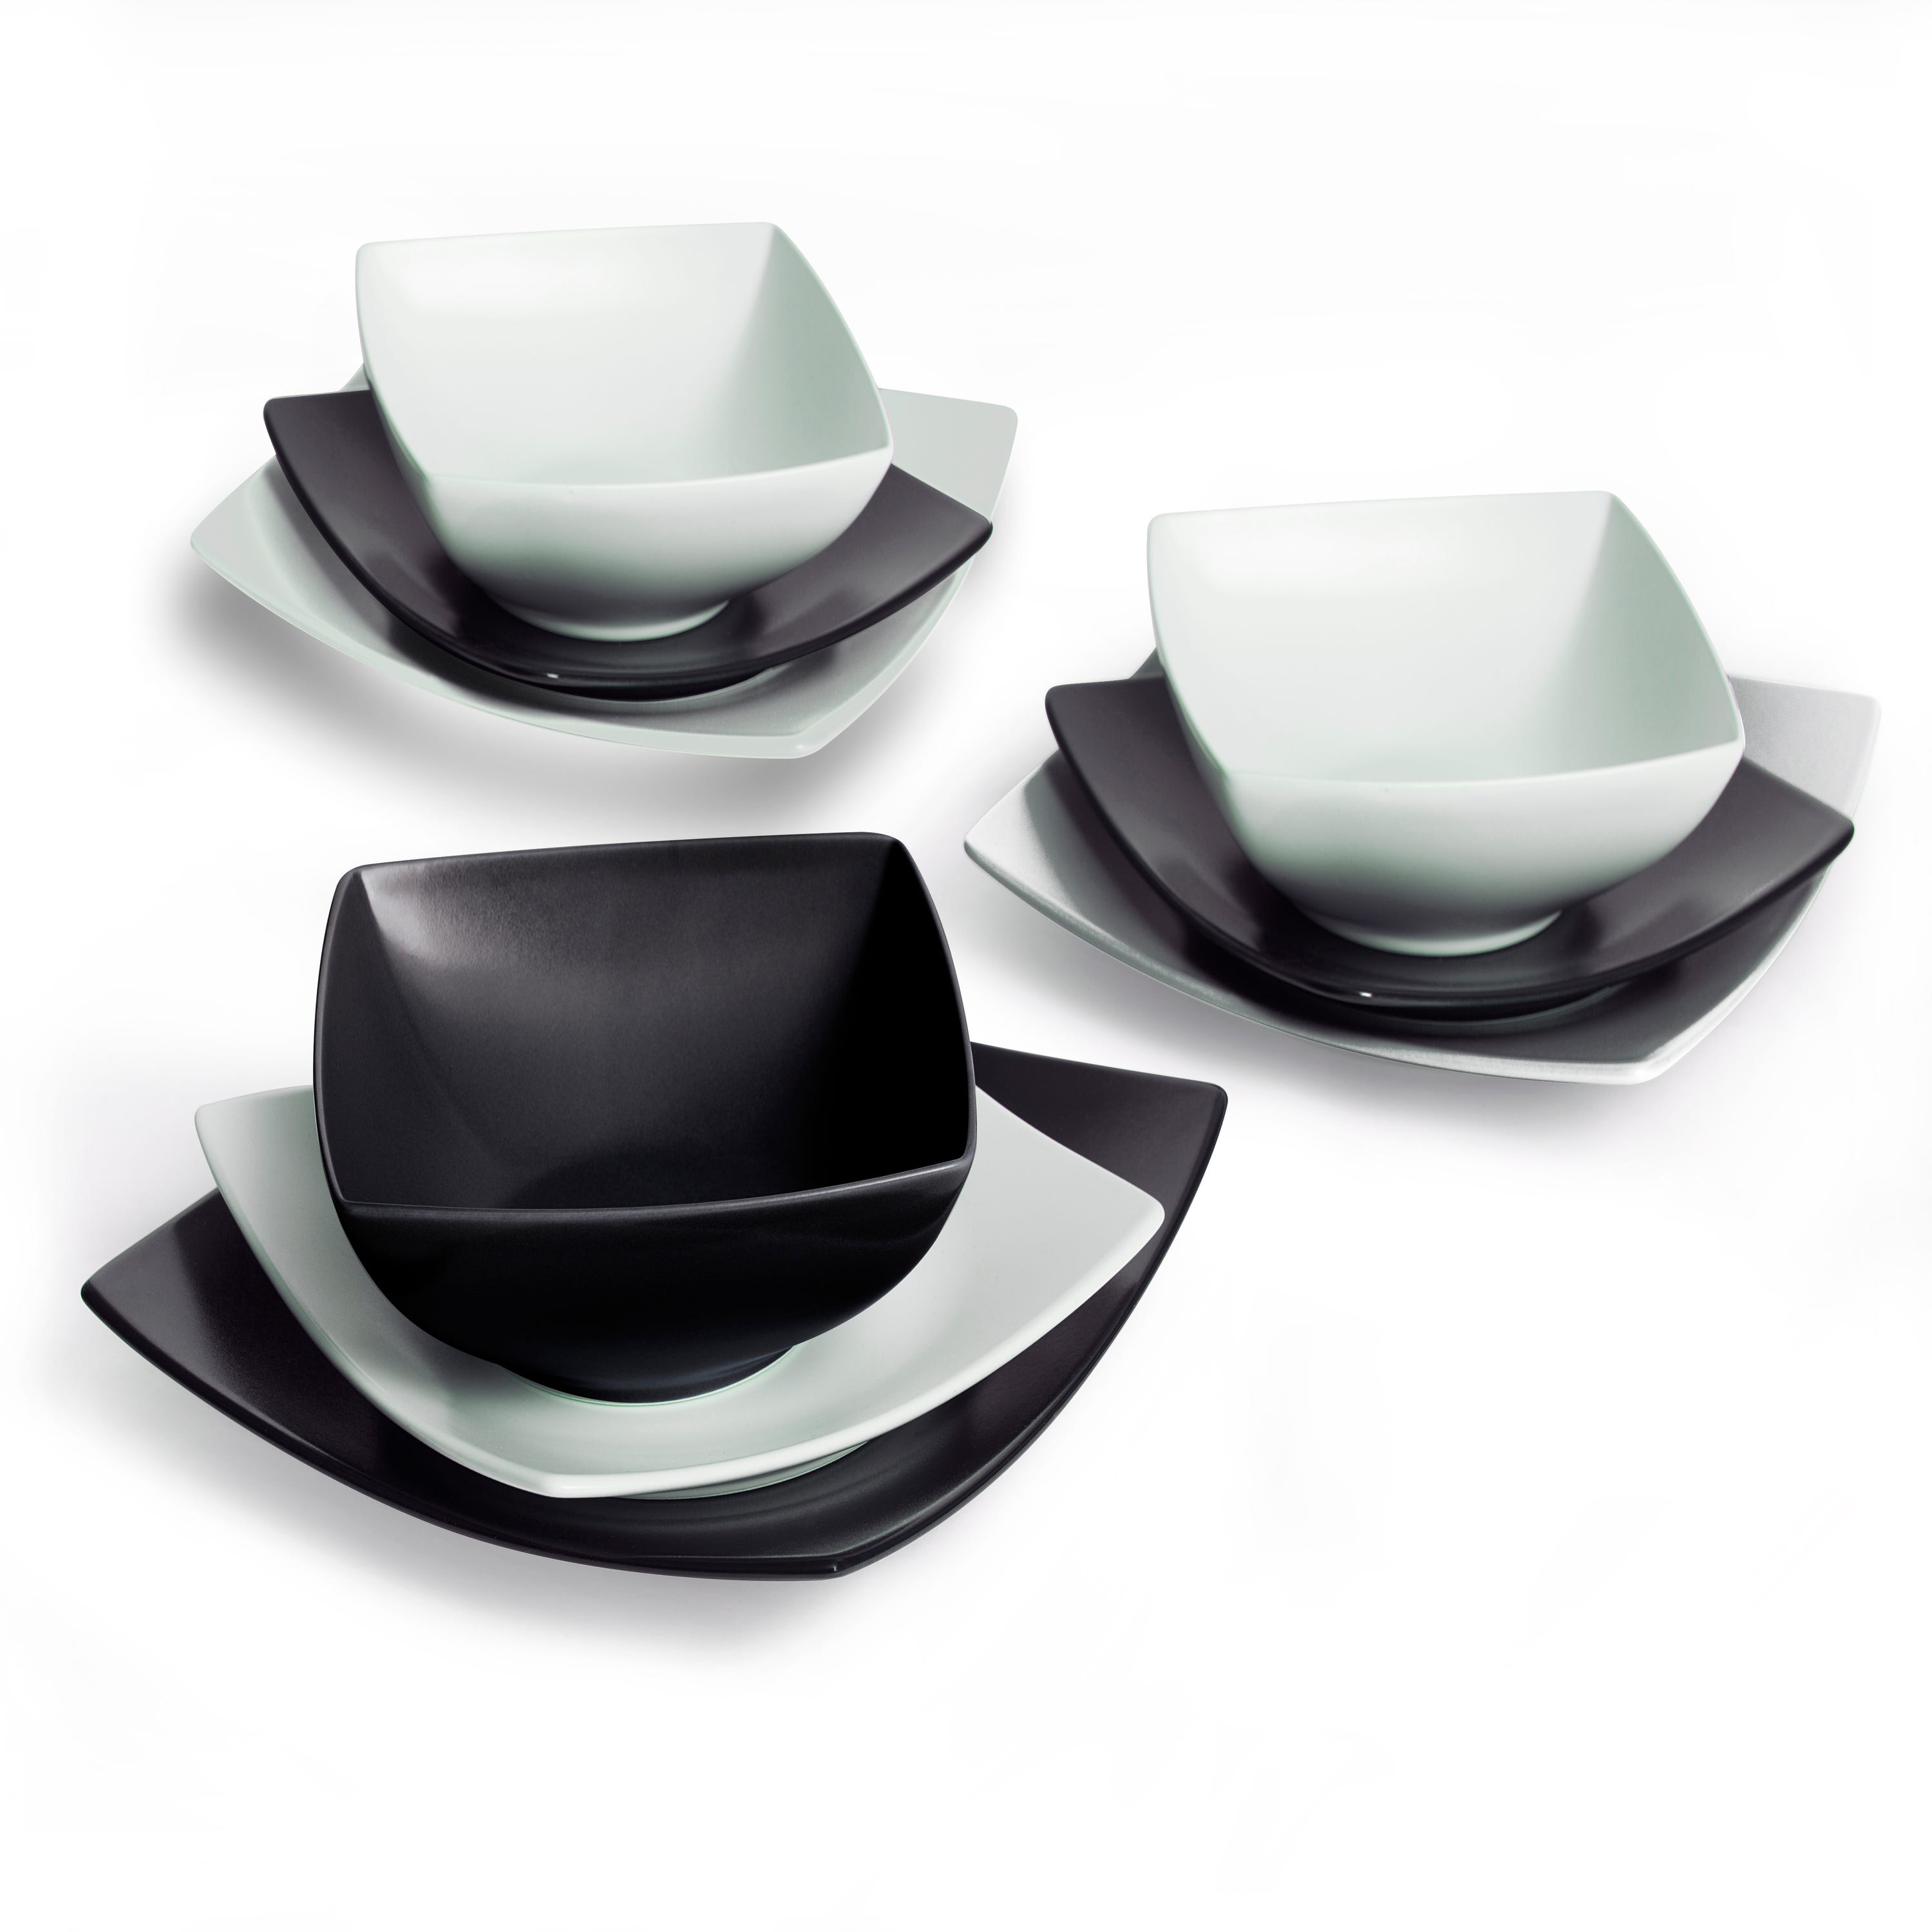 Excelsa servizio 18 piatti Eclipse ceramica bianco e nero